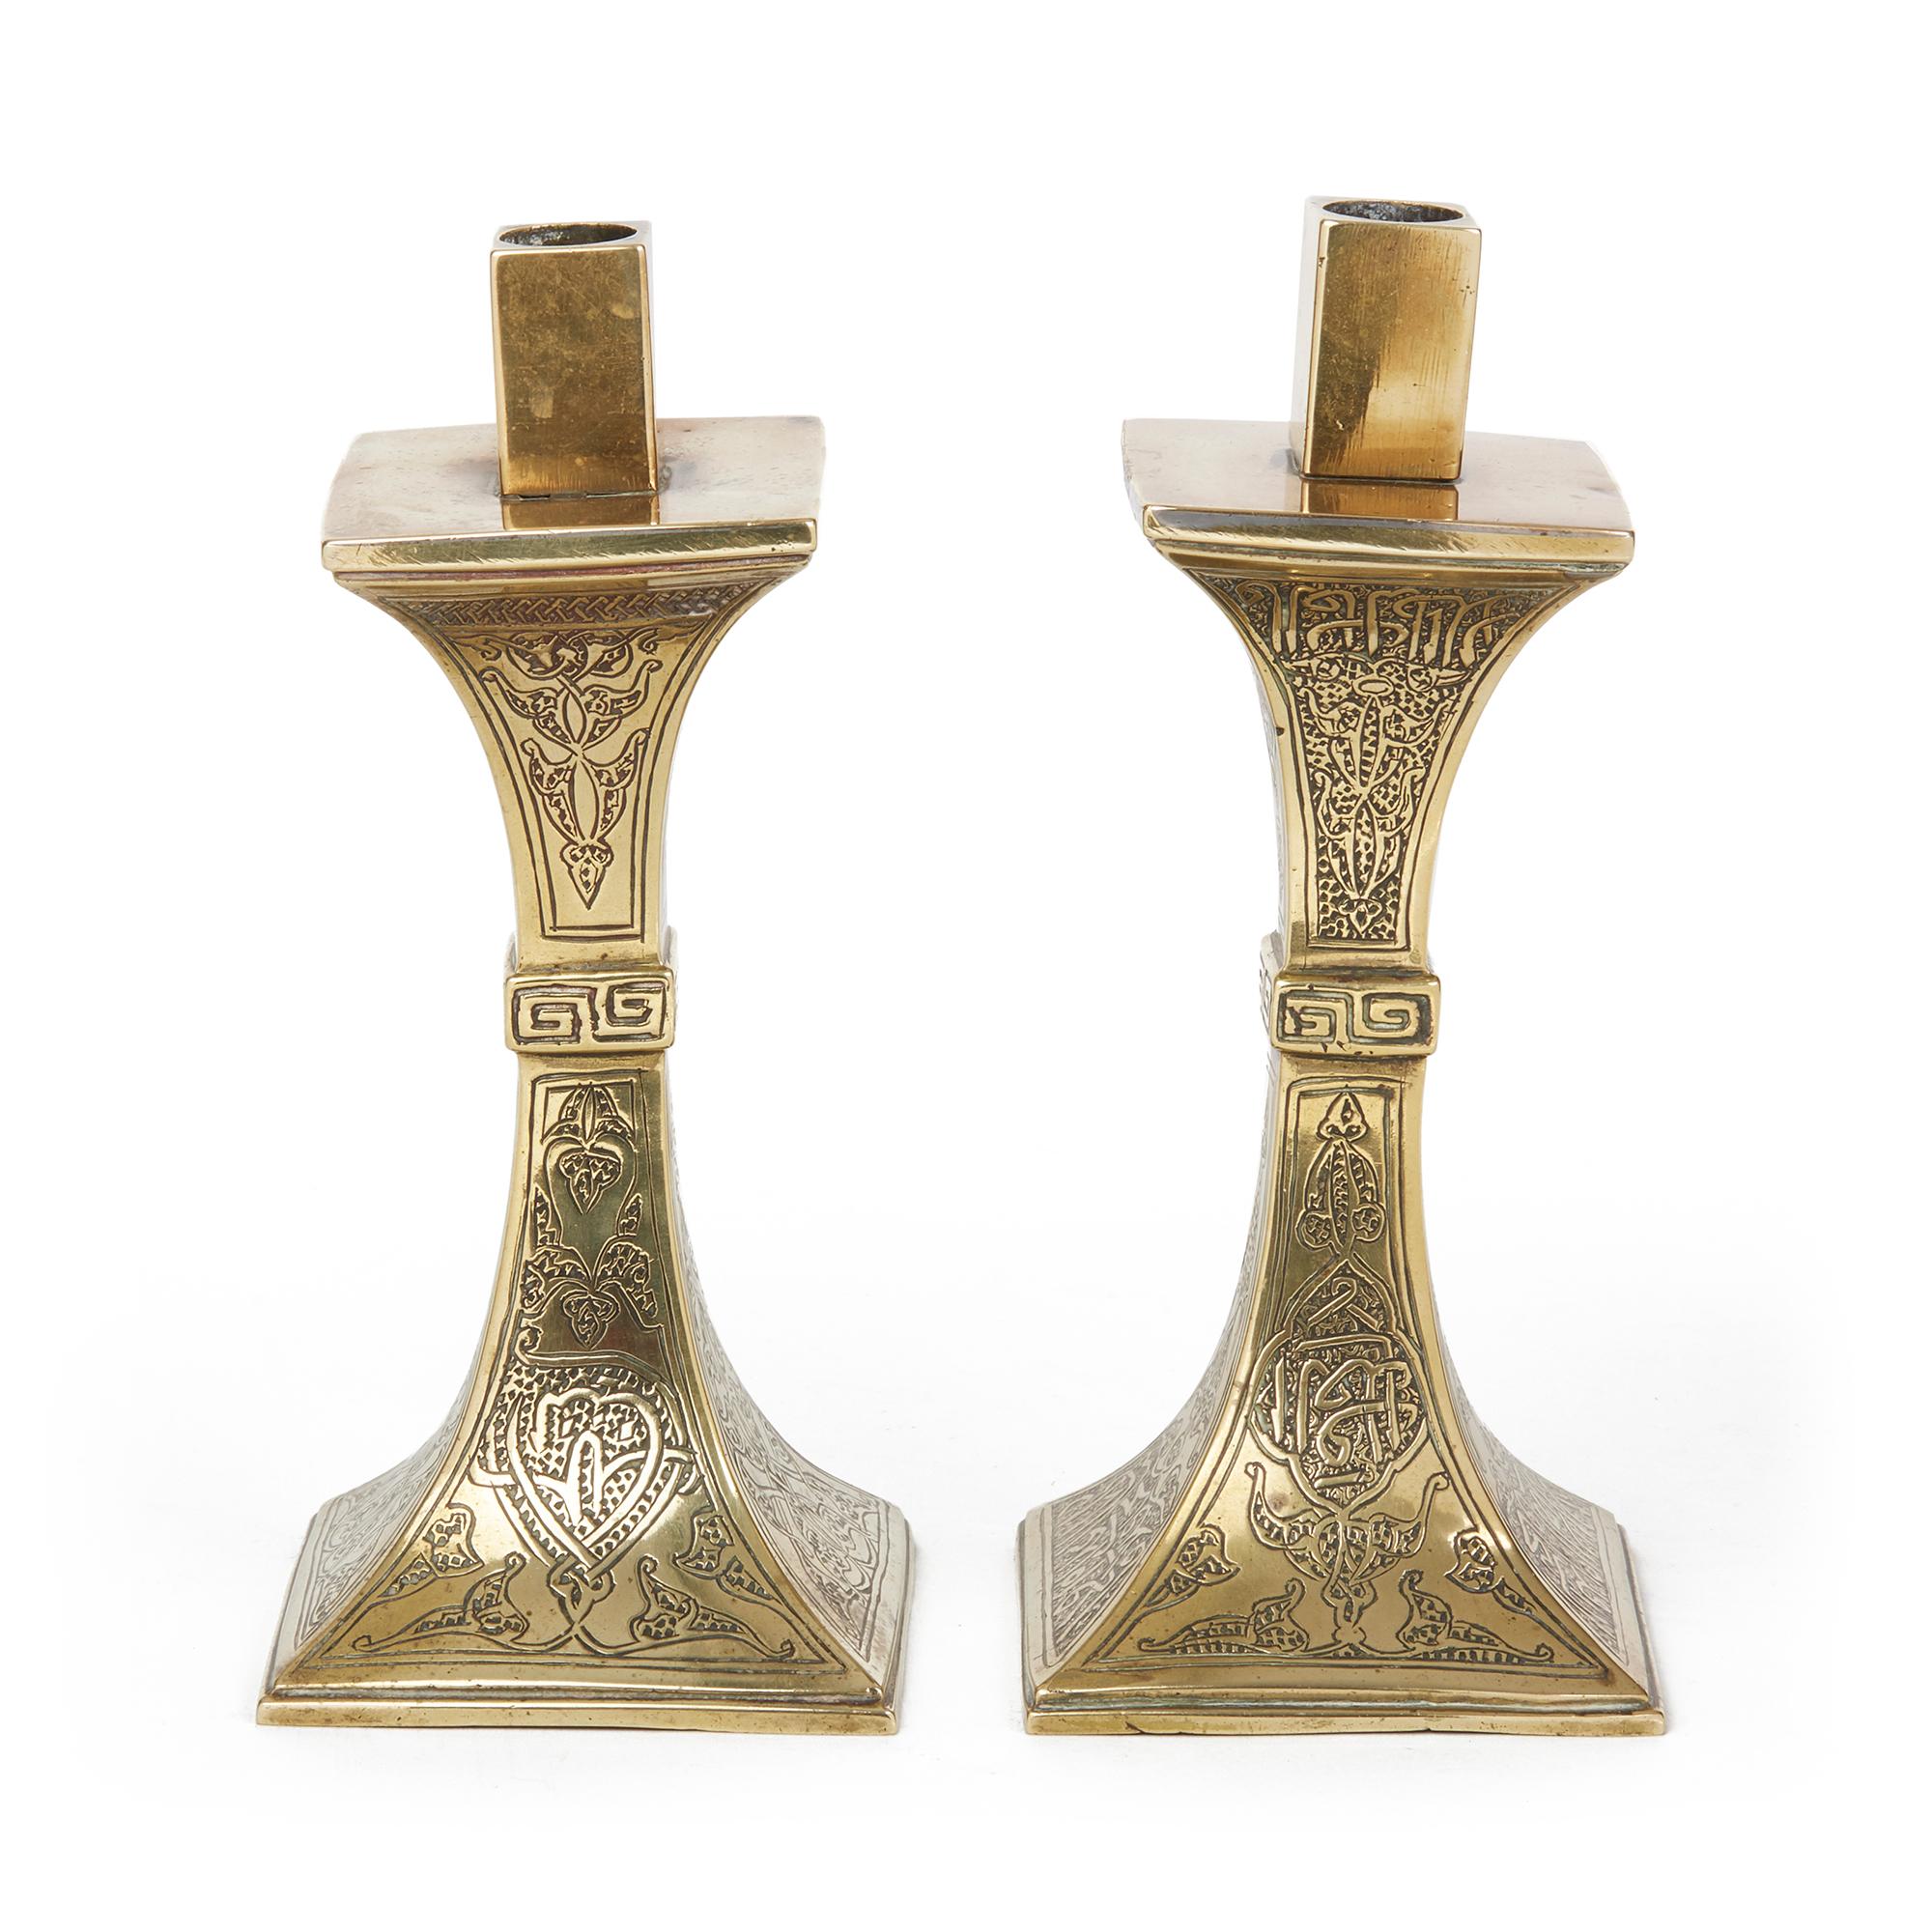 Très belle paire de chandeliers islamiques anciens, moyen-orientaux, en laiton, de forme carrée. Le corps est gravé à la main de motifs floraux et de rinceaux stylisés, décorés d'inscriptions arabes. Aucun des deux n'est marqué. On pense qu'il